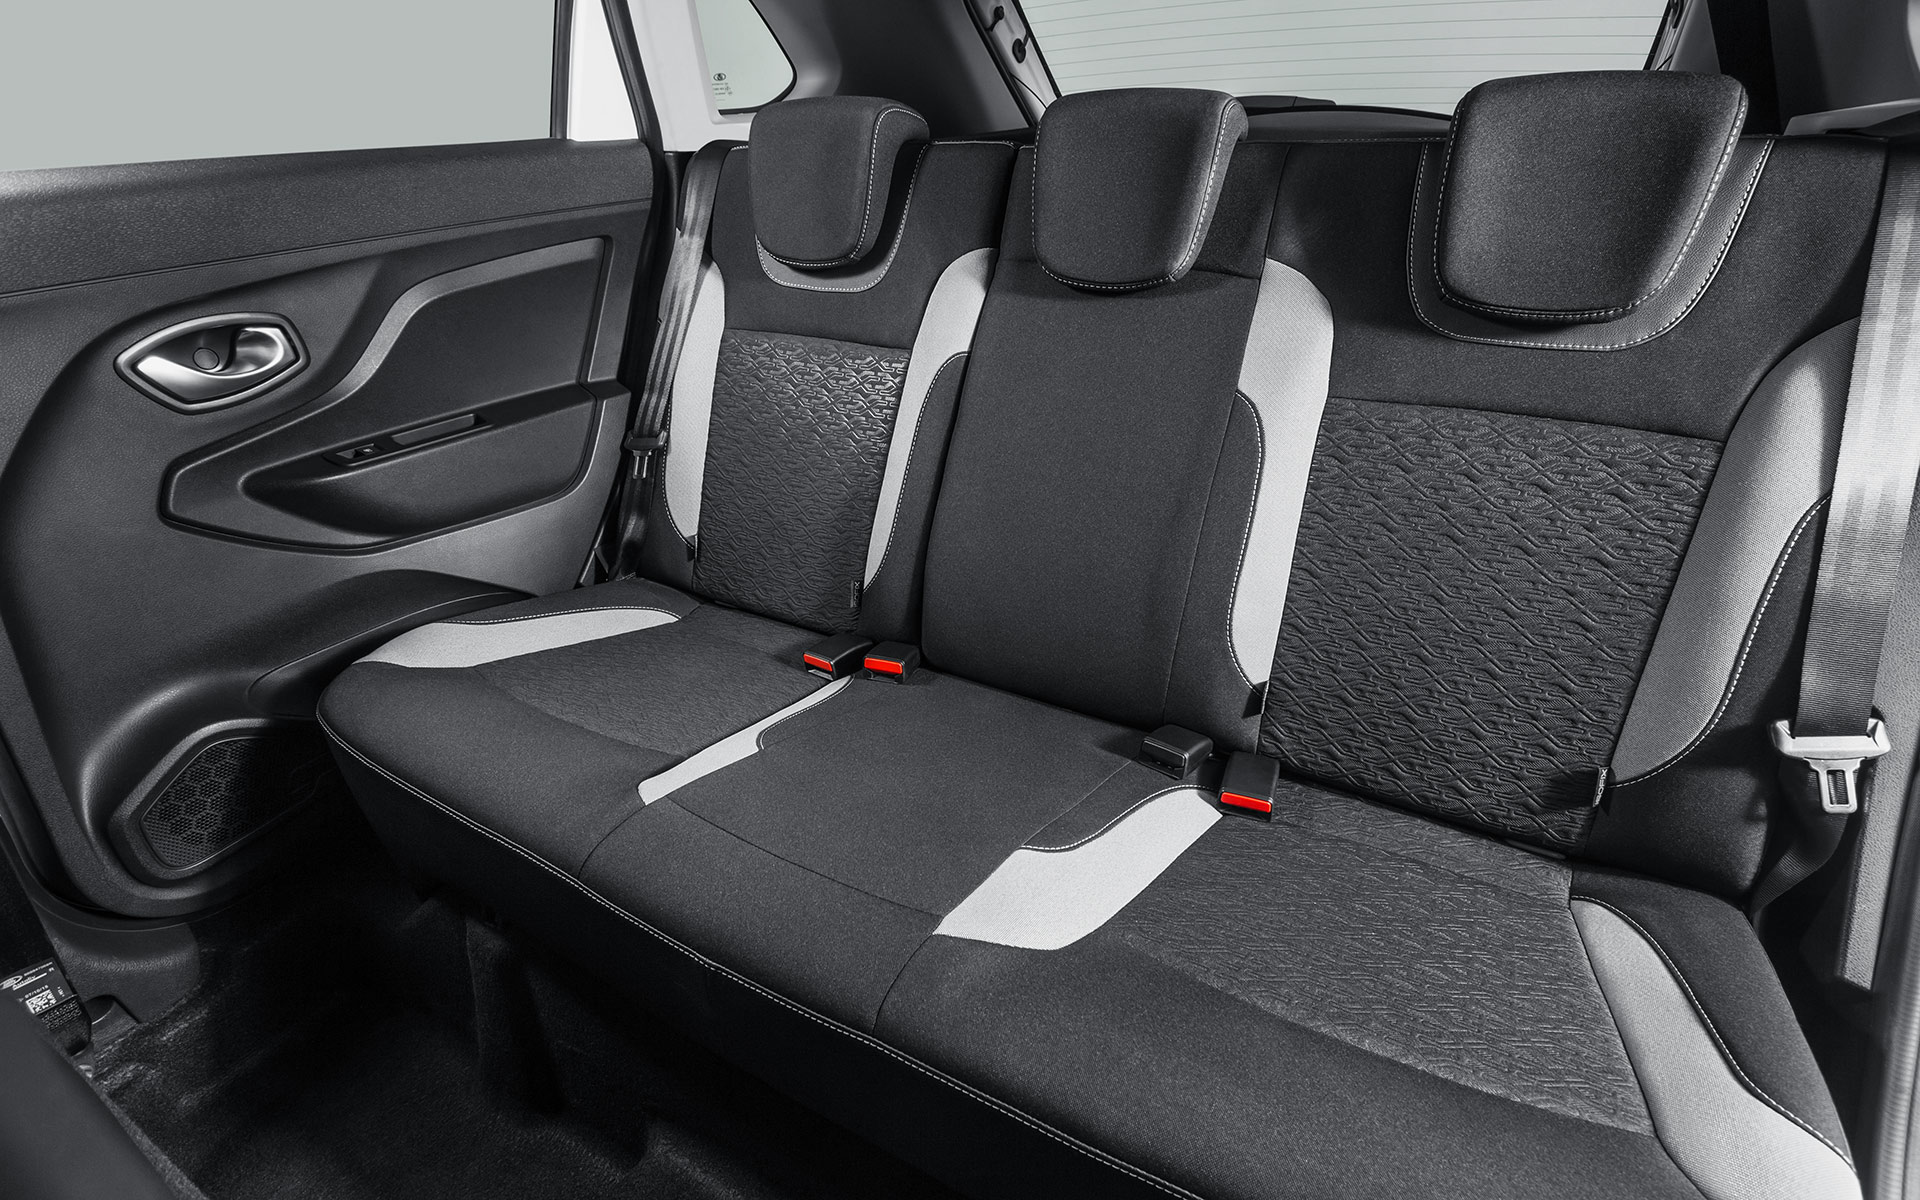 Купить Лада Х Рей по цене 2019-2020 в Тольятти у официального дилера в автосалоне на новый Lada XRAY, комплектации и характеристики